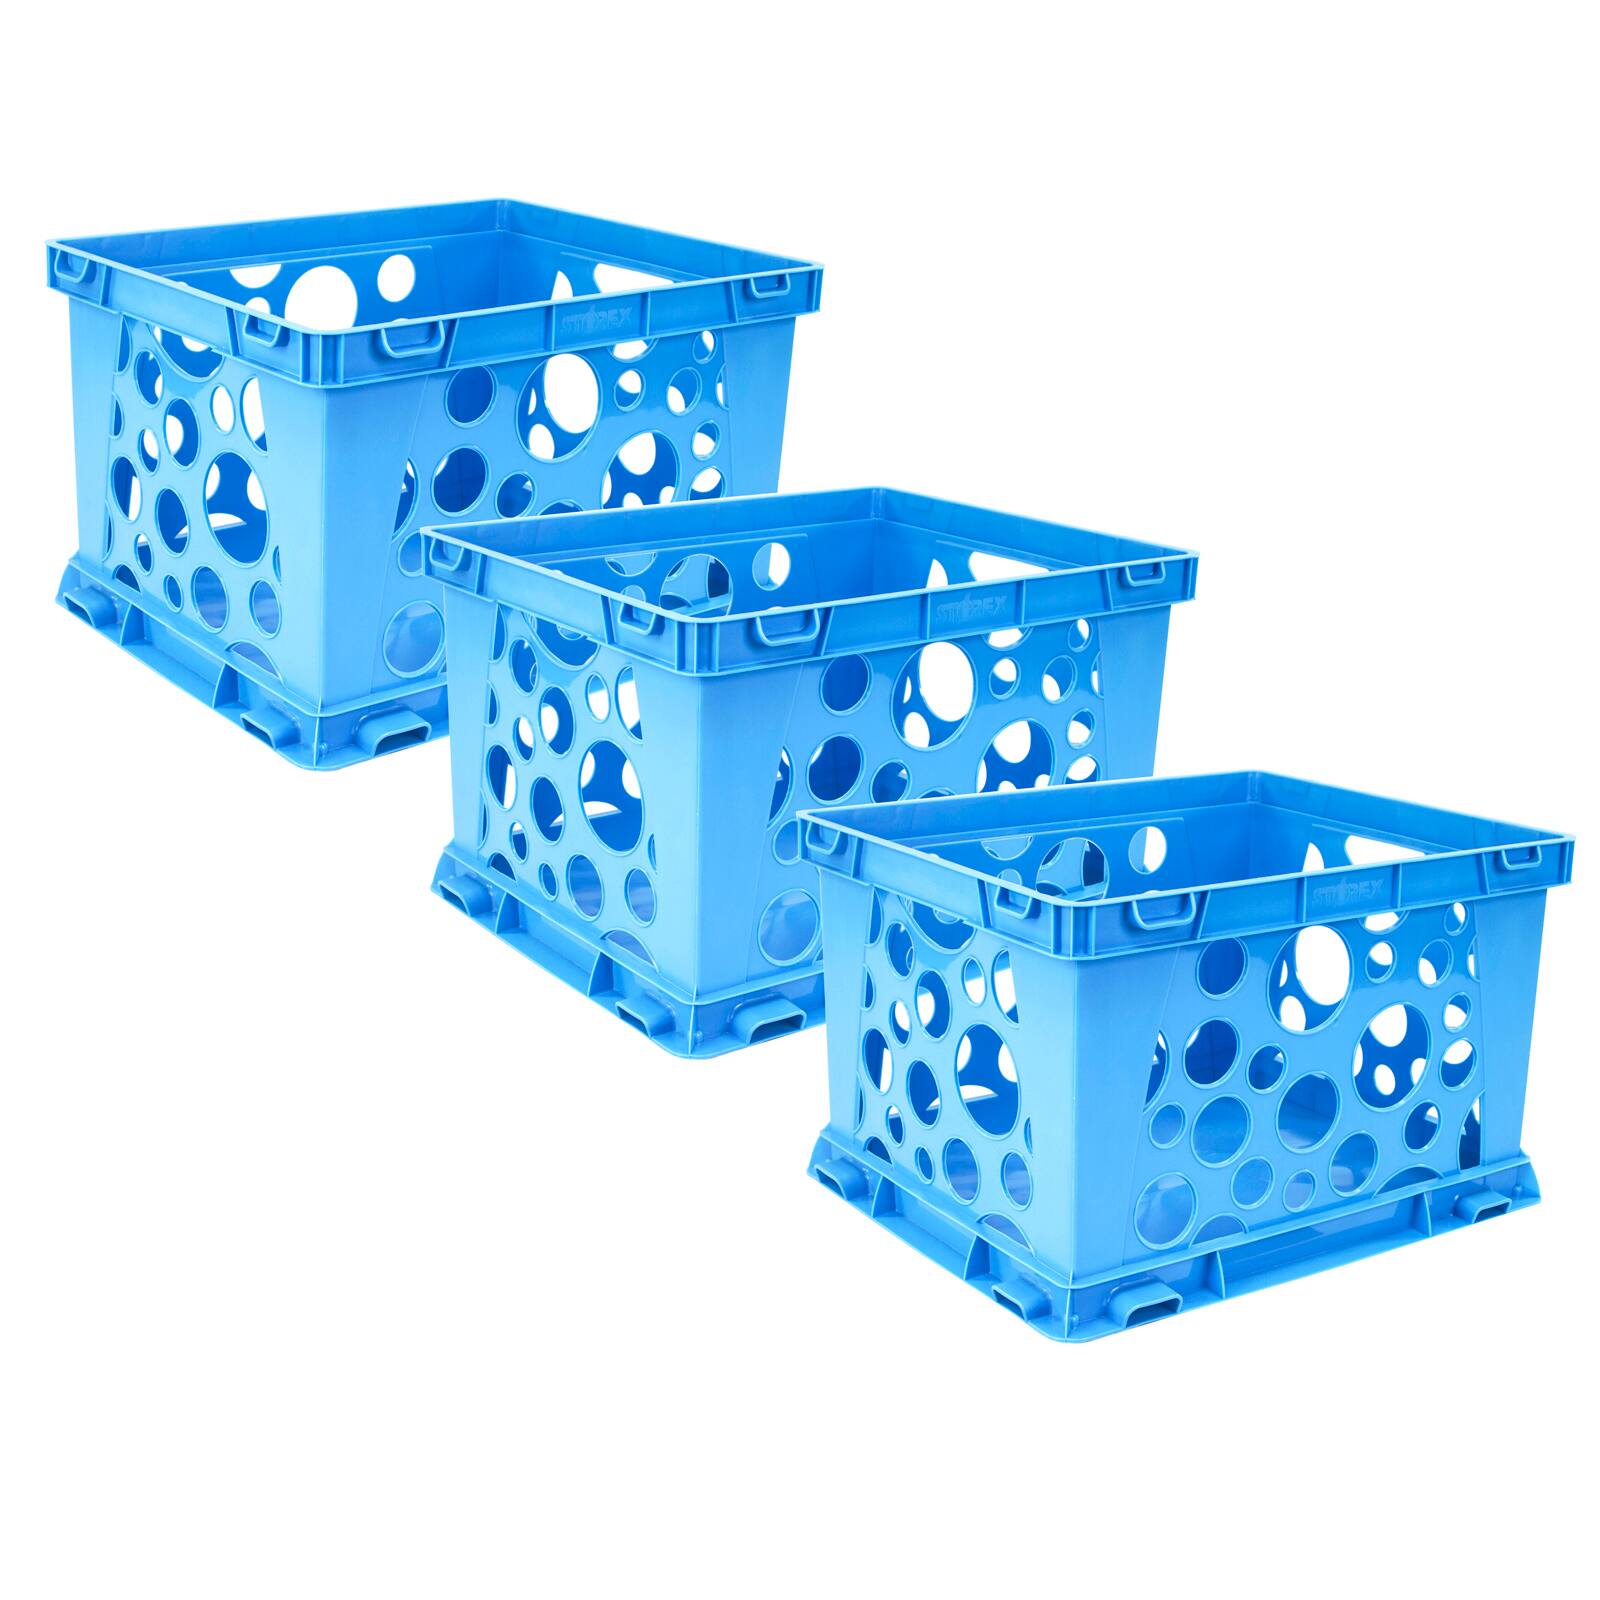 Case of 3 9 x 7.75 x 6 Inches School Blue Storex Mini Crate 61490U03C 